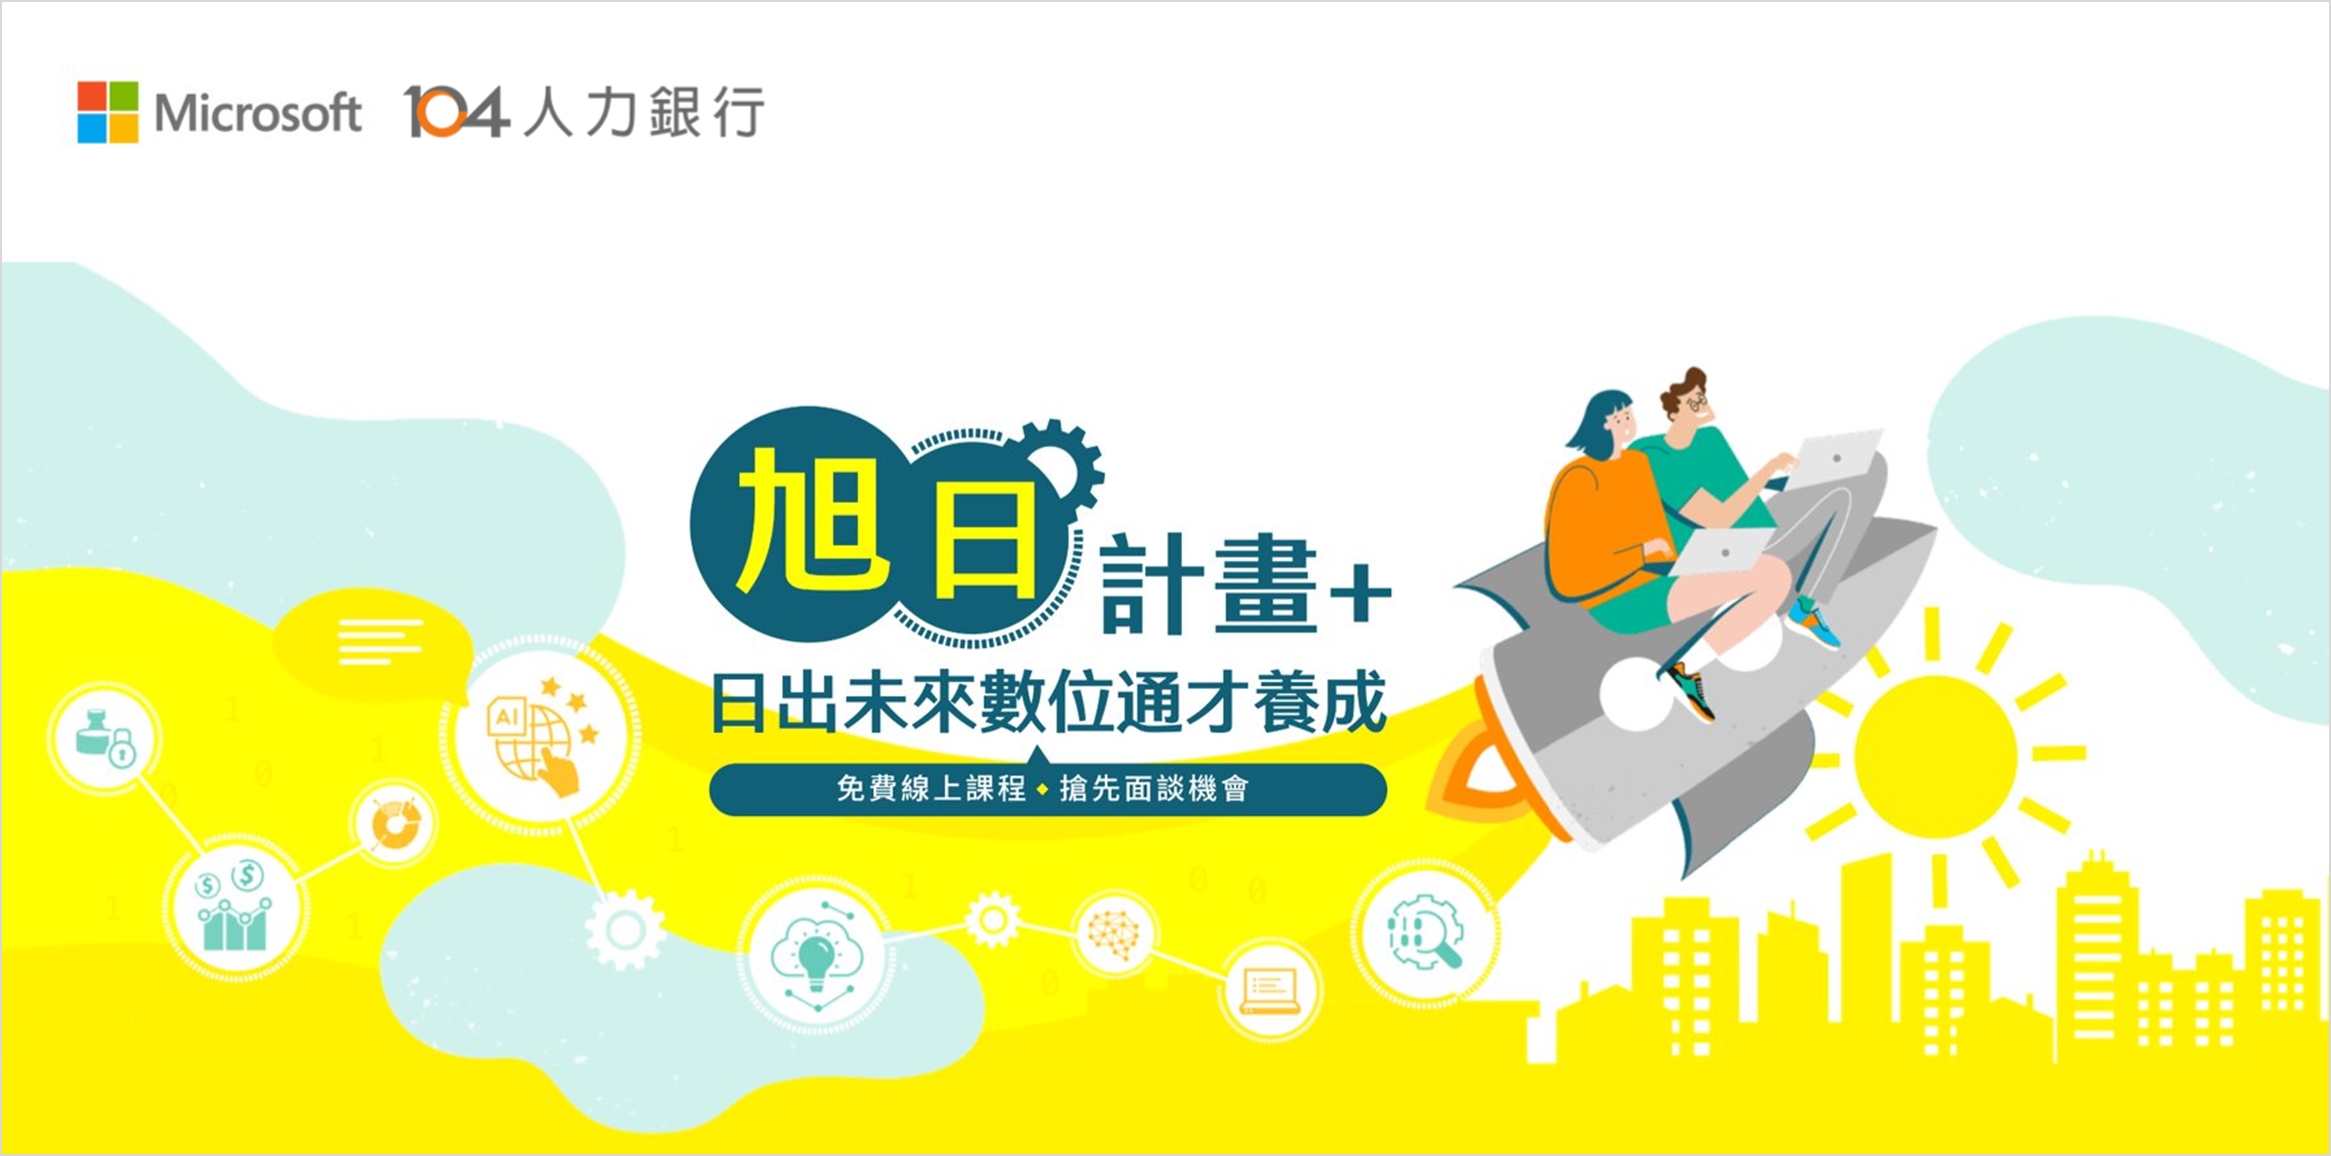 台灣微軟攜手 104 推動「旭日計畫 +」 串聯 61 間企業提供逾 550 個職缺